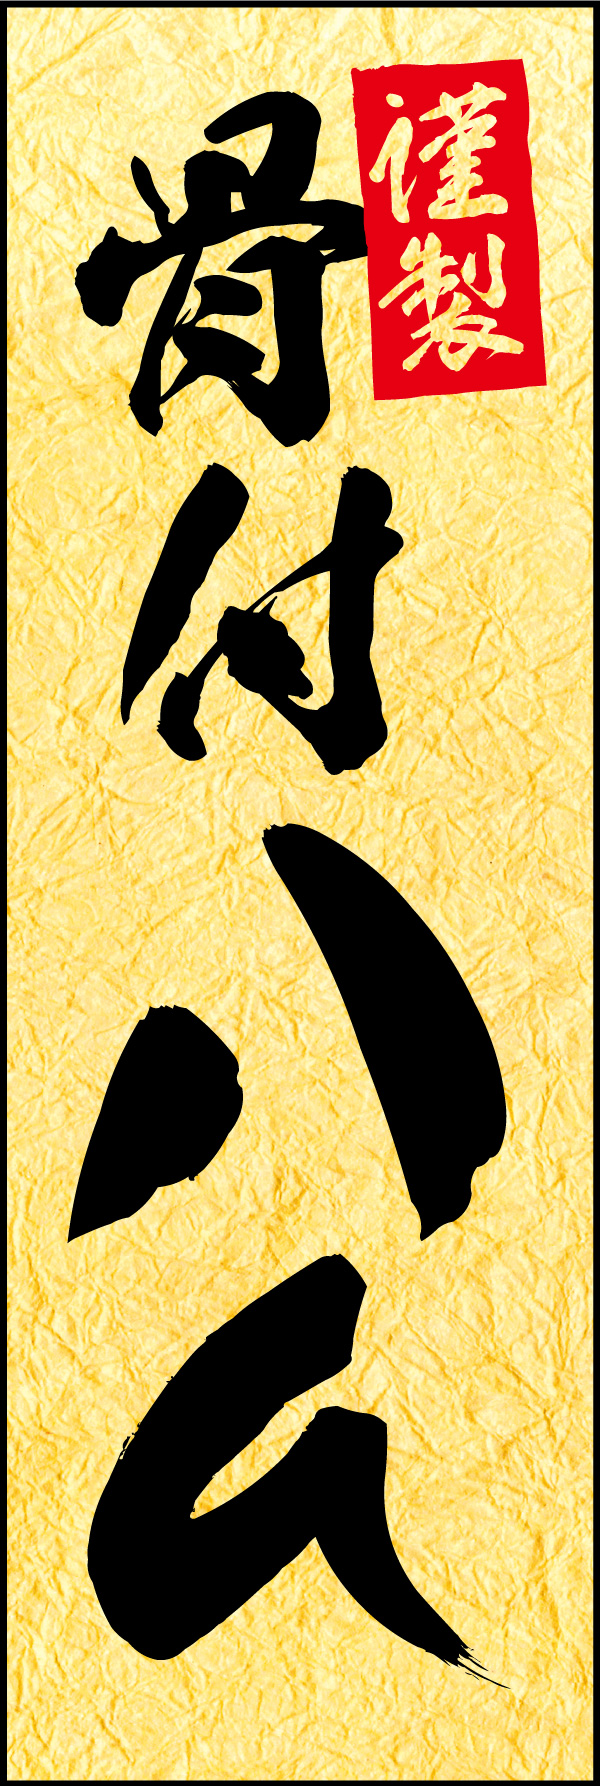 骨付きハム 01 「骨付きハム」の幟です。お中元・お歳暮や、贈答品に相応しい品格のある商品をイメージしたデザインにしました。(Y.M)